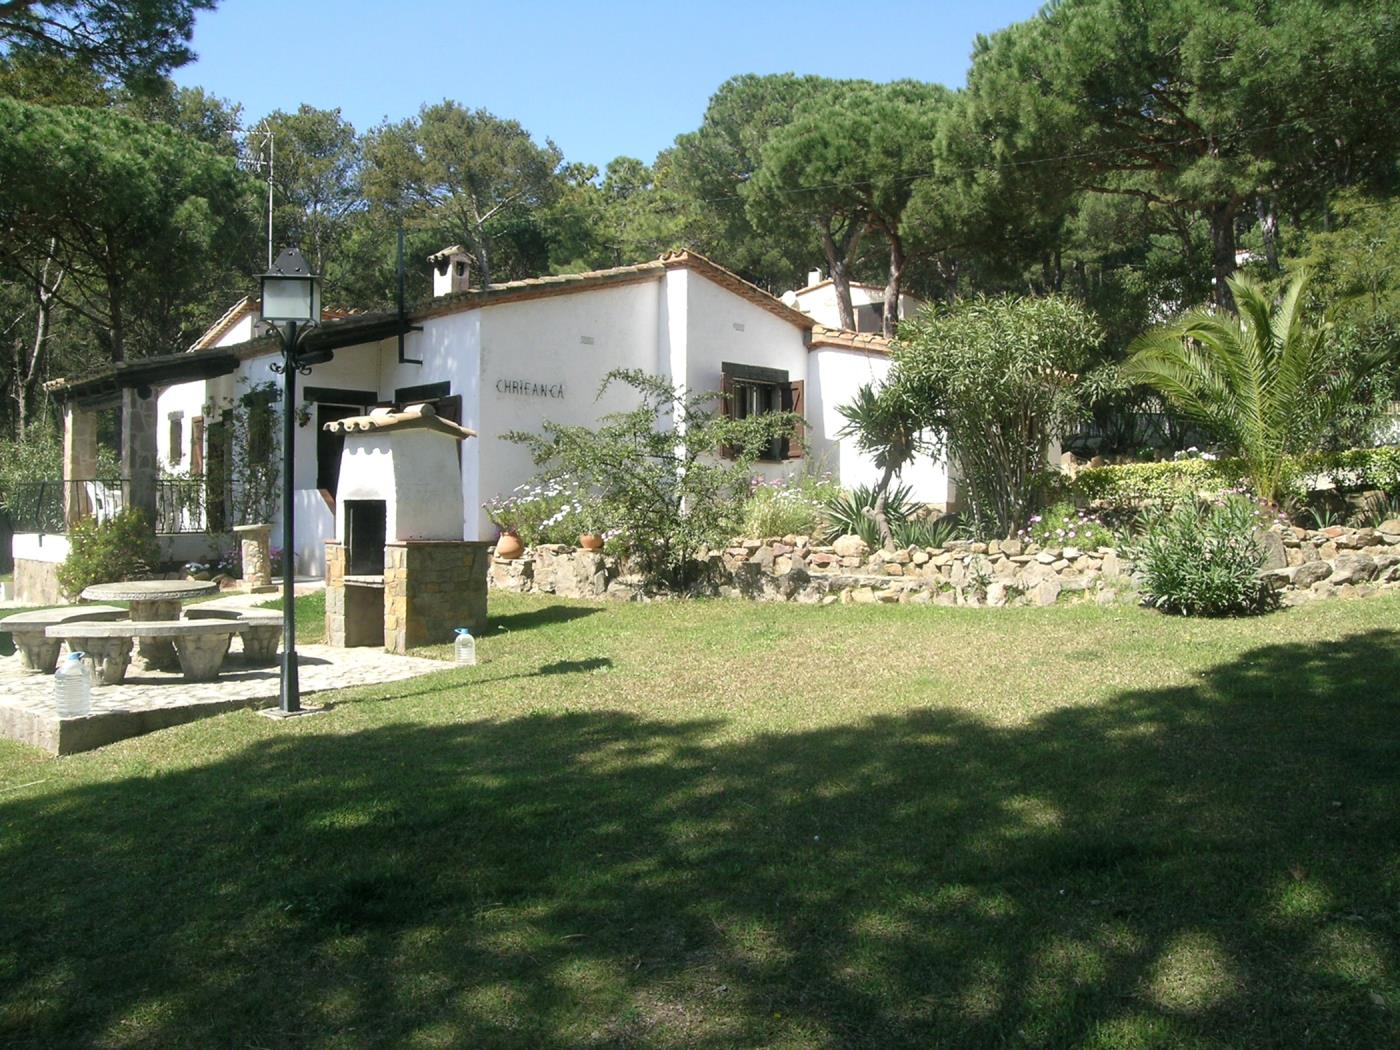 Casa Chifranca, Begur, Costa Brava à begur